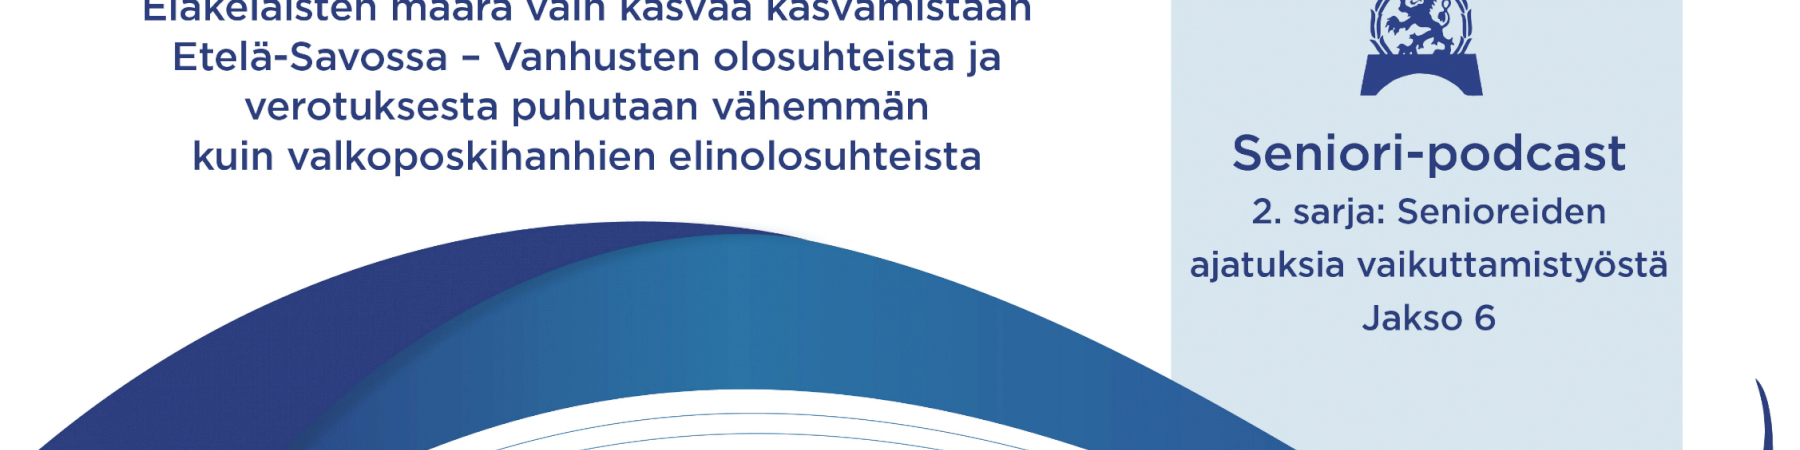 Jakso 6: Liisa Torniainen ja Jorma Kurittu: Vanhusten olosuhteista ja verotuksesta puhutaan vähemmän kuin valkoposkihanhien elinolosuhteista